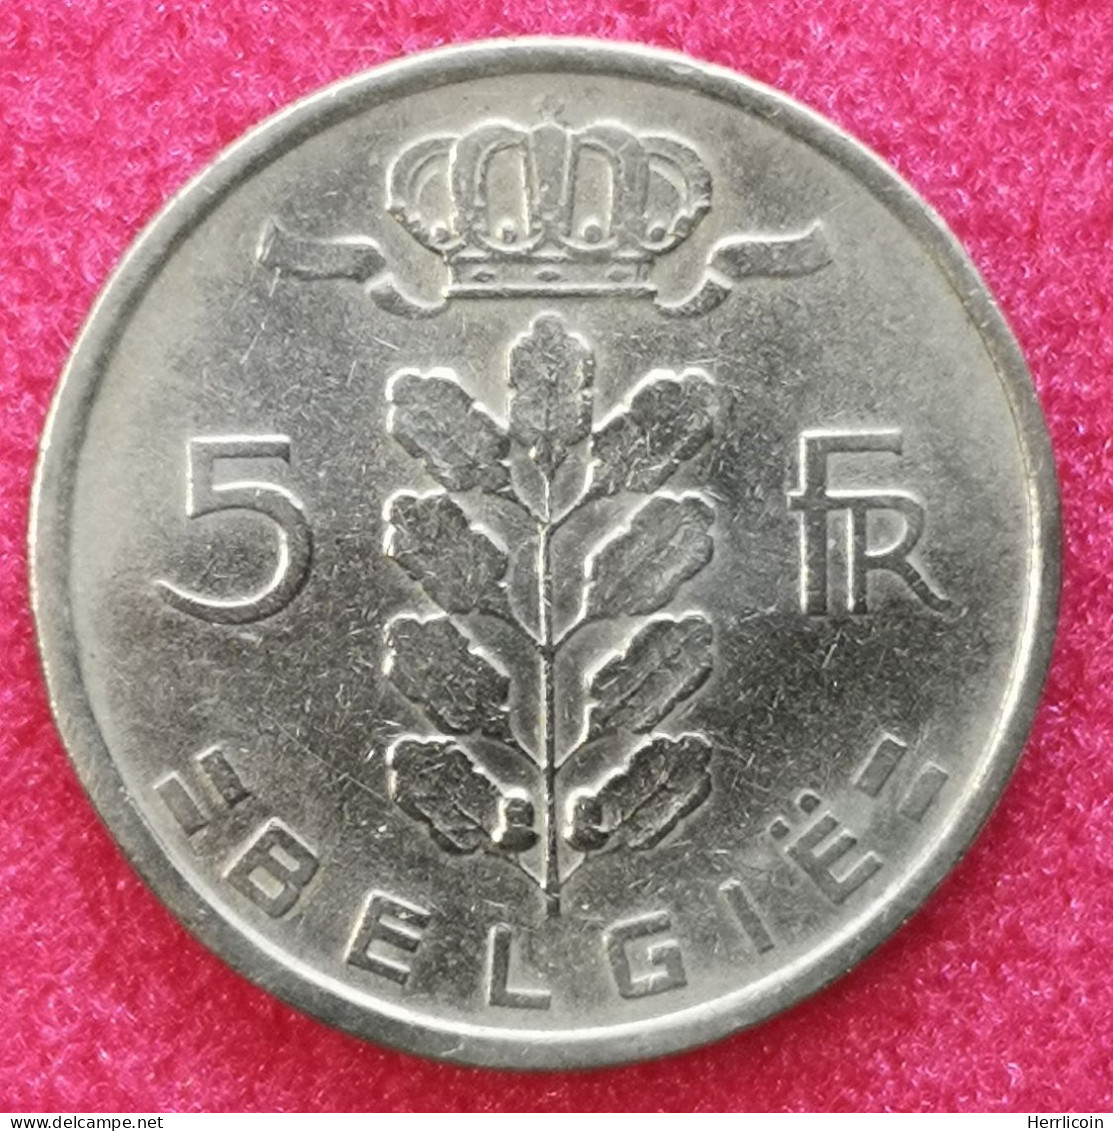 Monnaie Belgique - 1949 - 5 Francs - Type Cérès En Néerlandais - 5 Frank